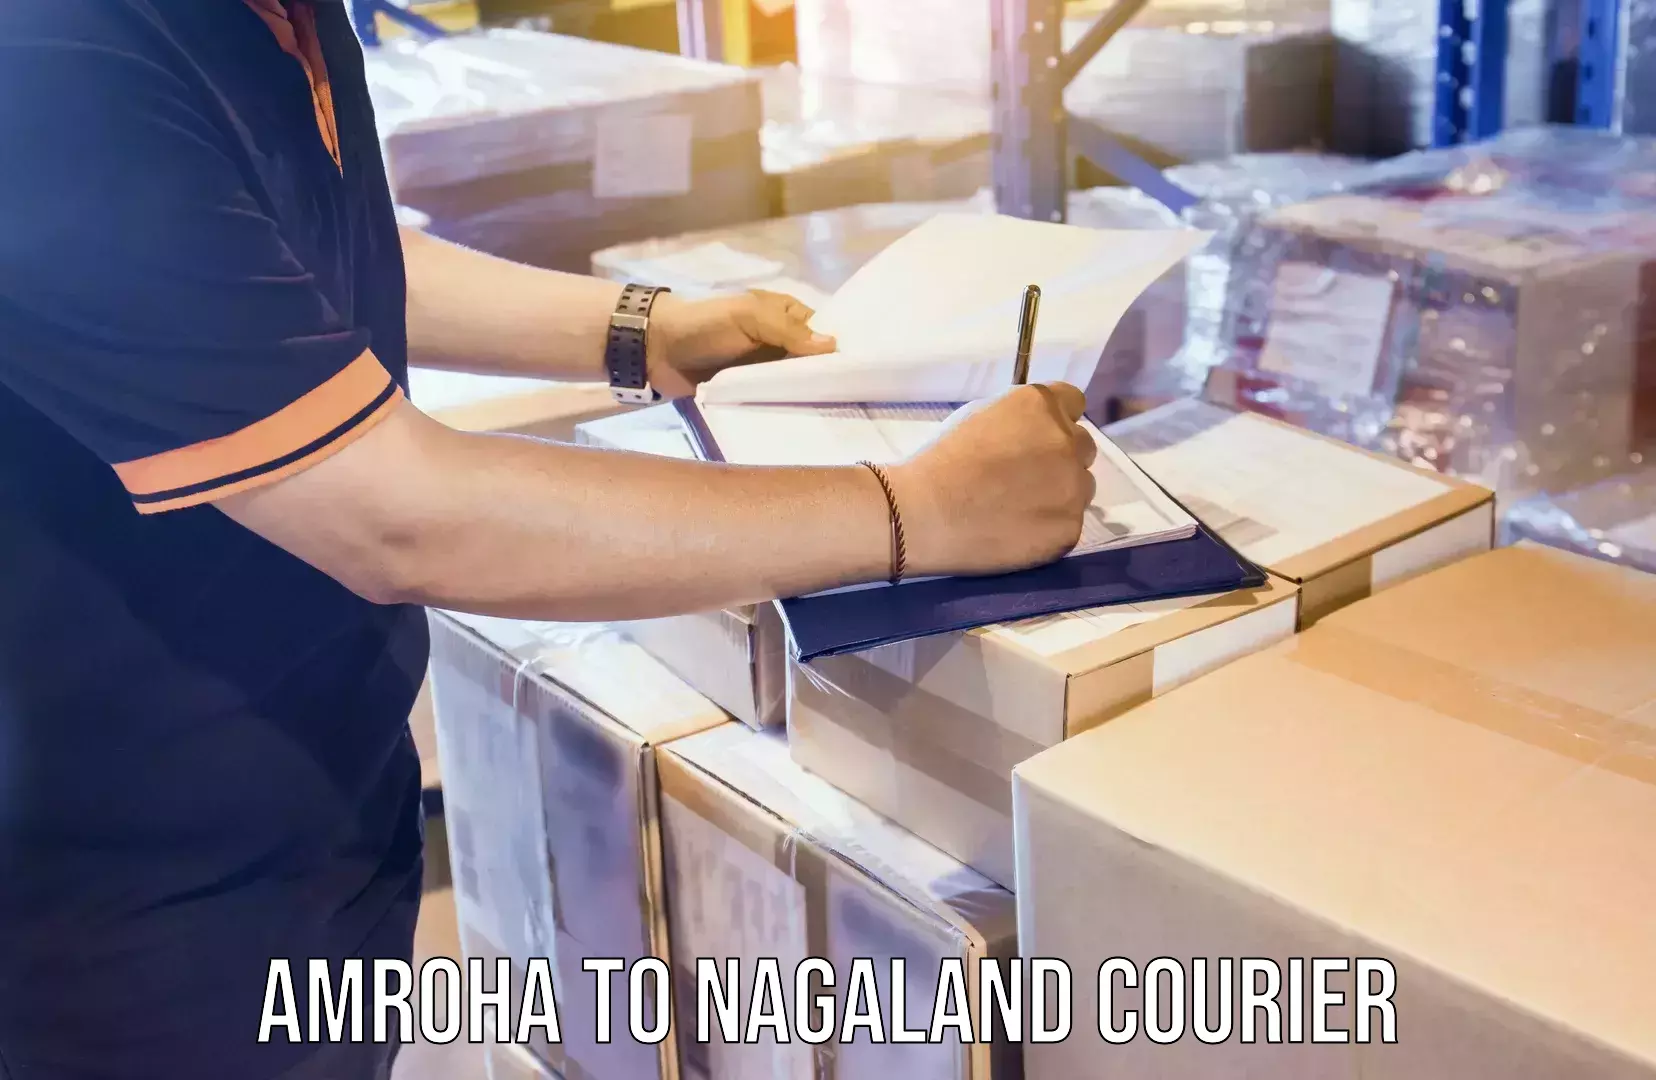 Specialized shipment handling Amroha to Nagaland